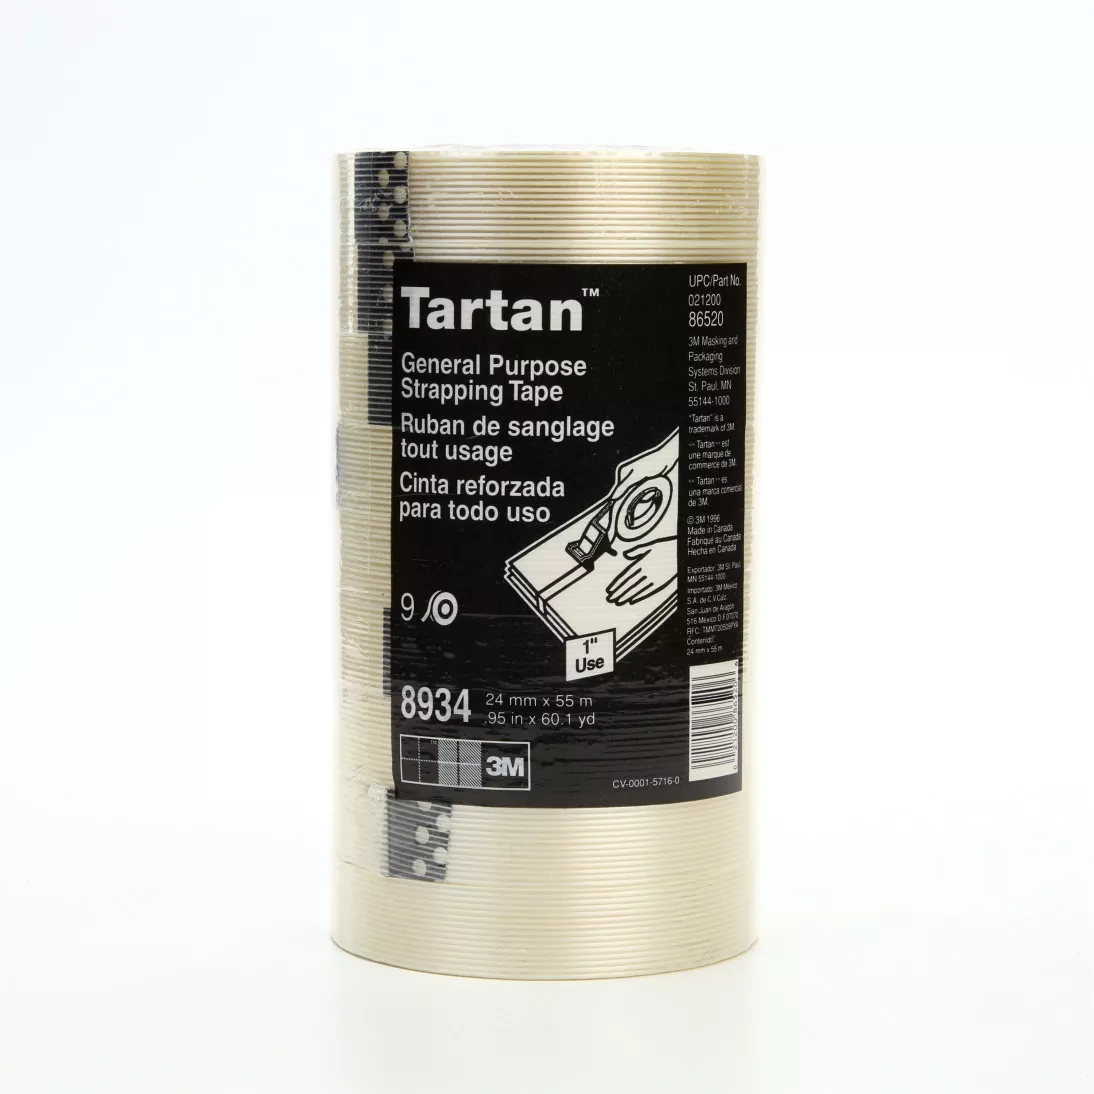 Tartan™ Filament Tape 8934, Clear, 24 mm x 55 m, 4 mil, 36 rolls per
case